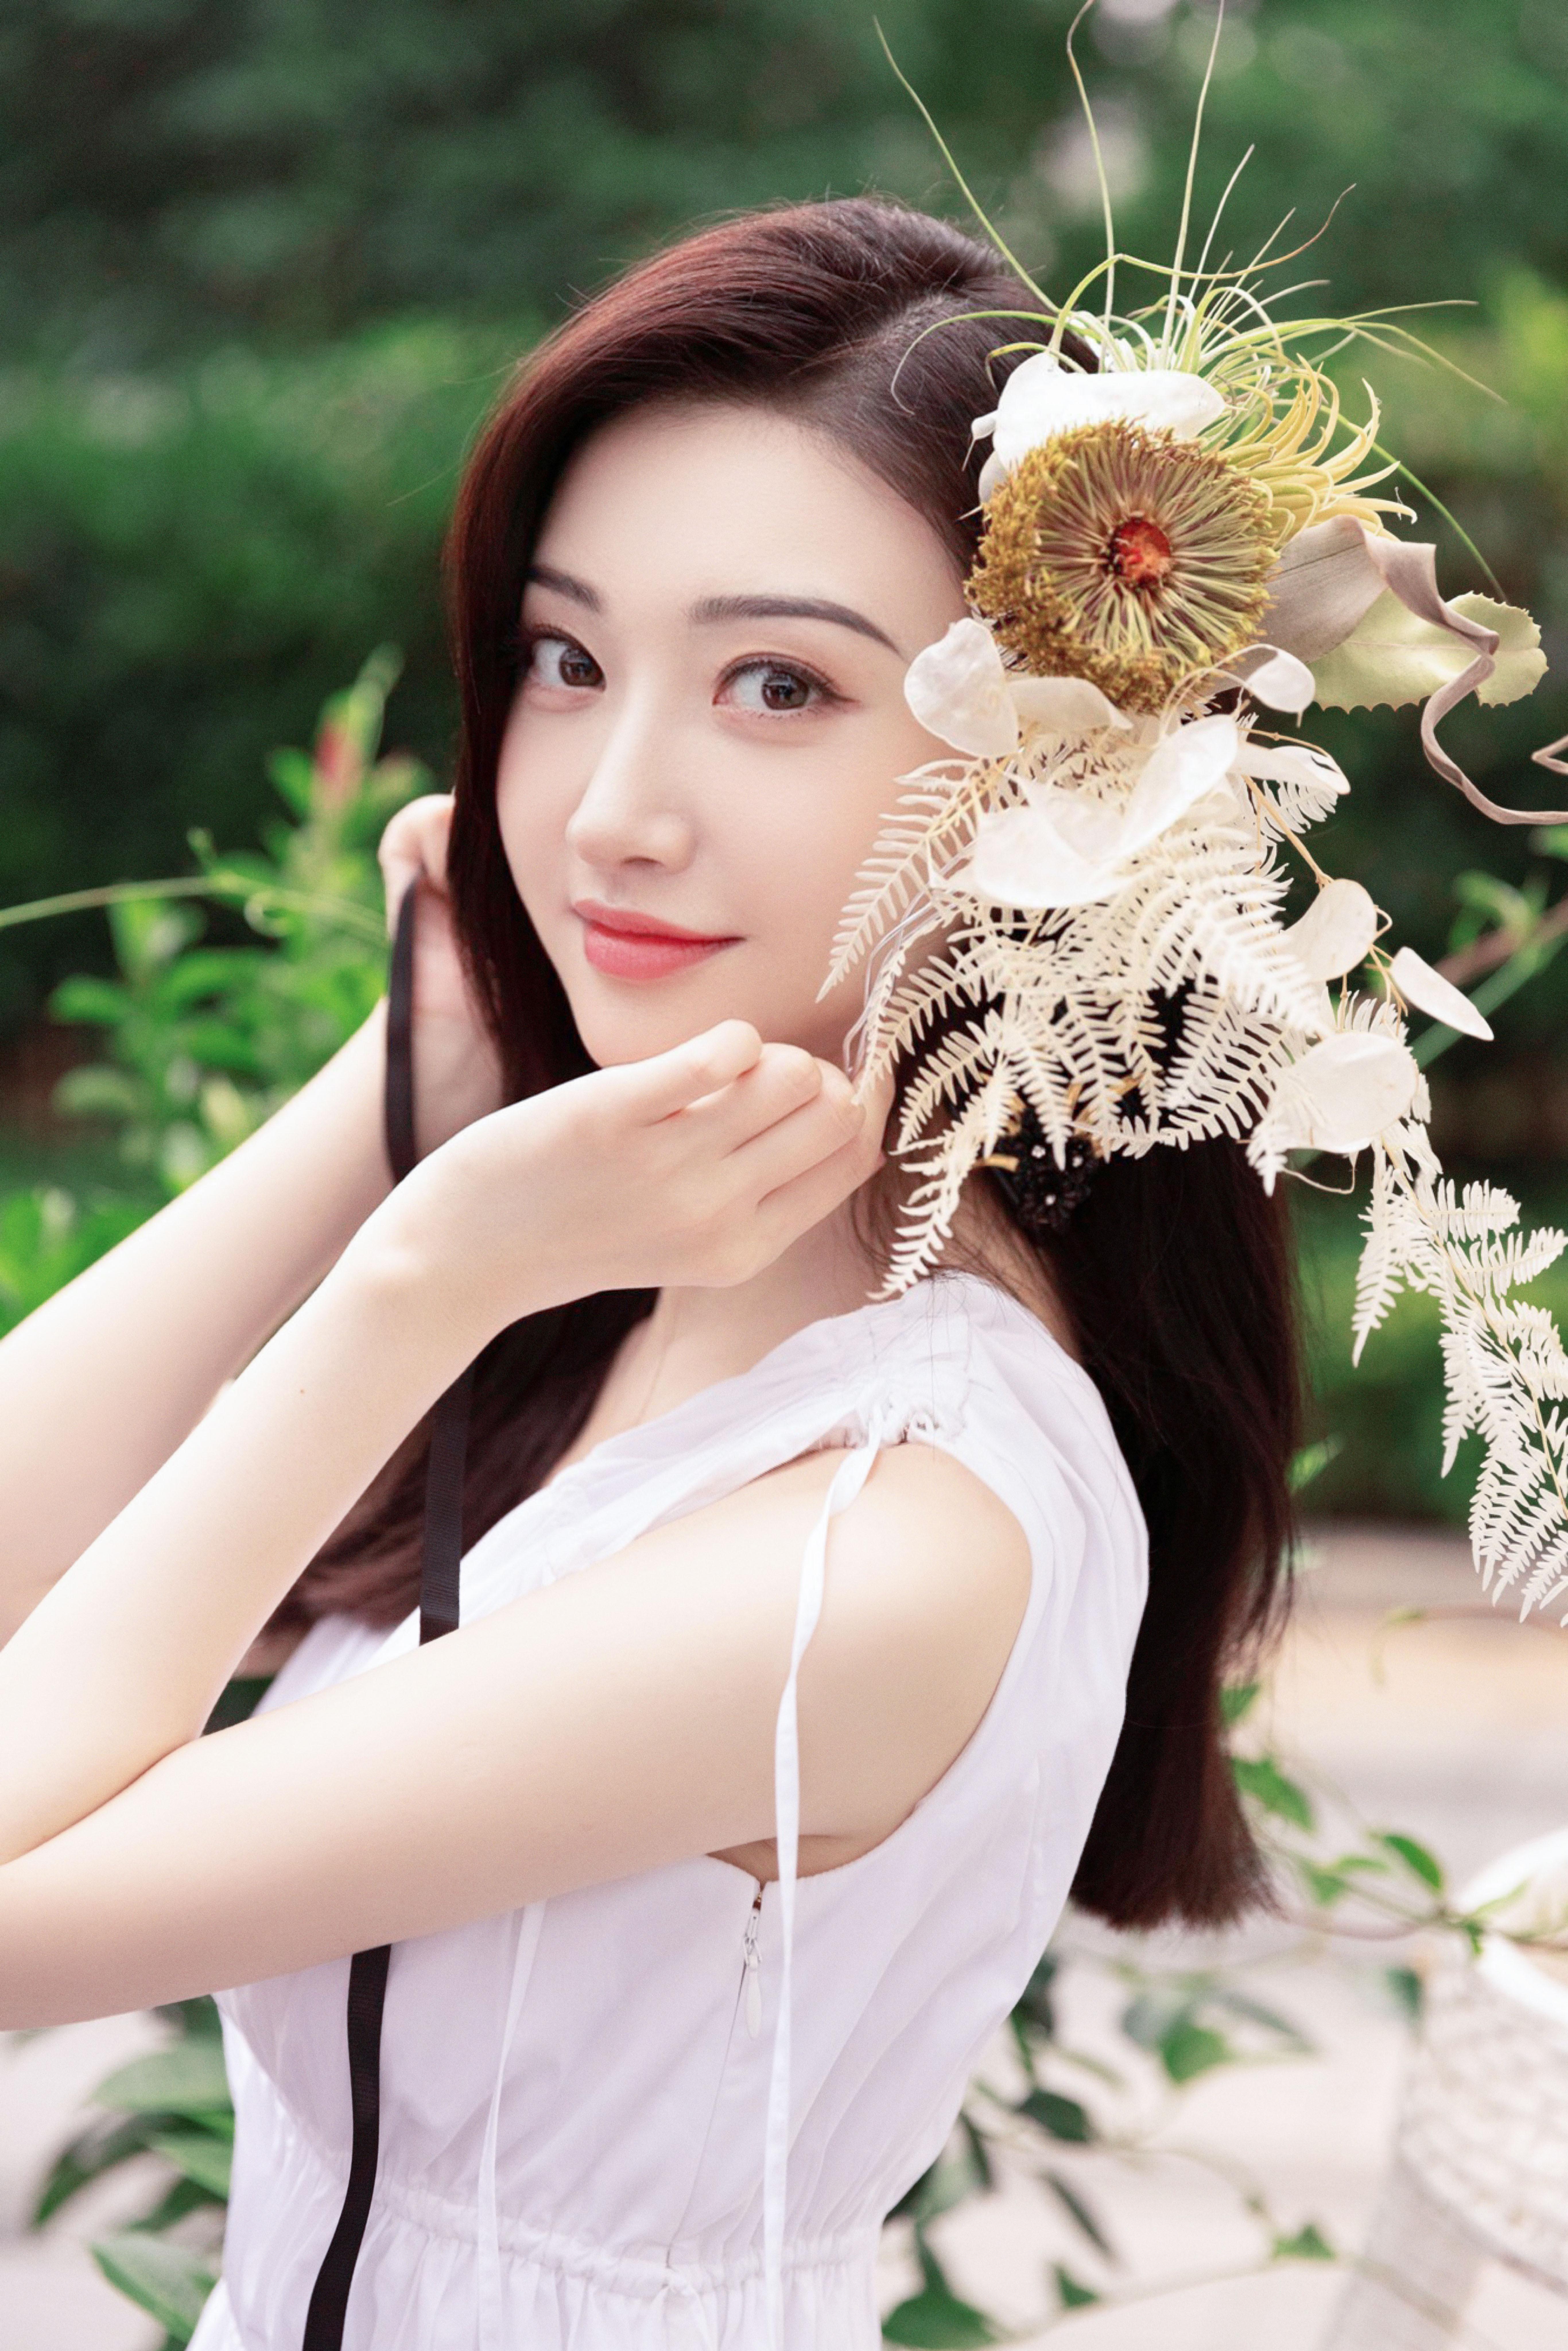 景甜花园写真夏日氛围满满 白色连衣裙清新眼神纯净,